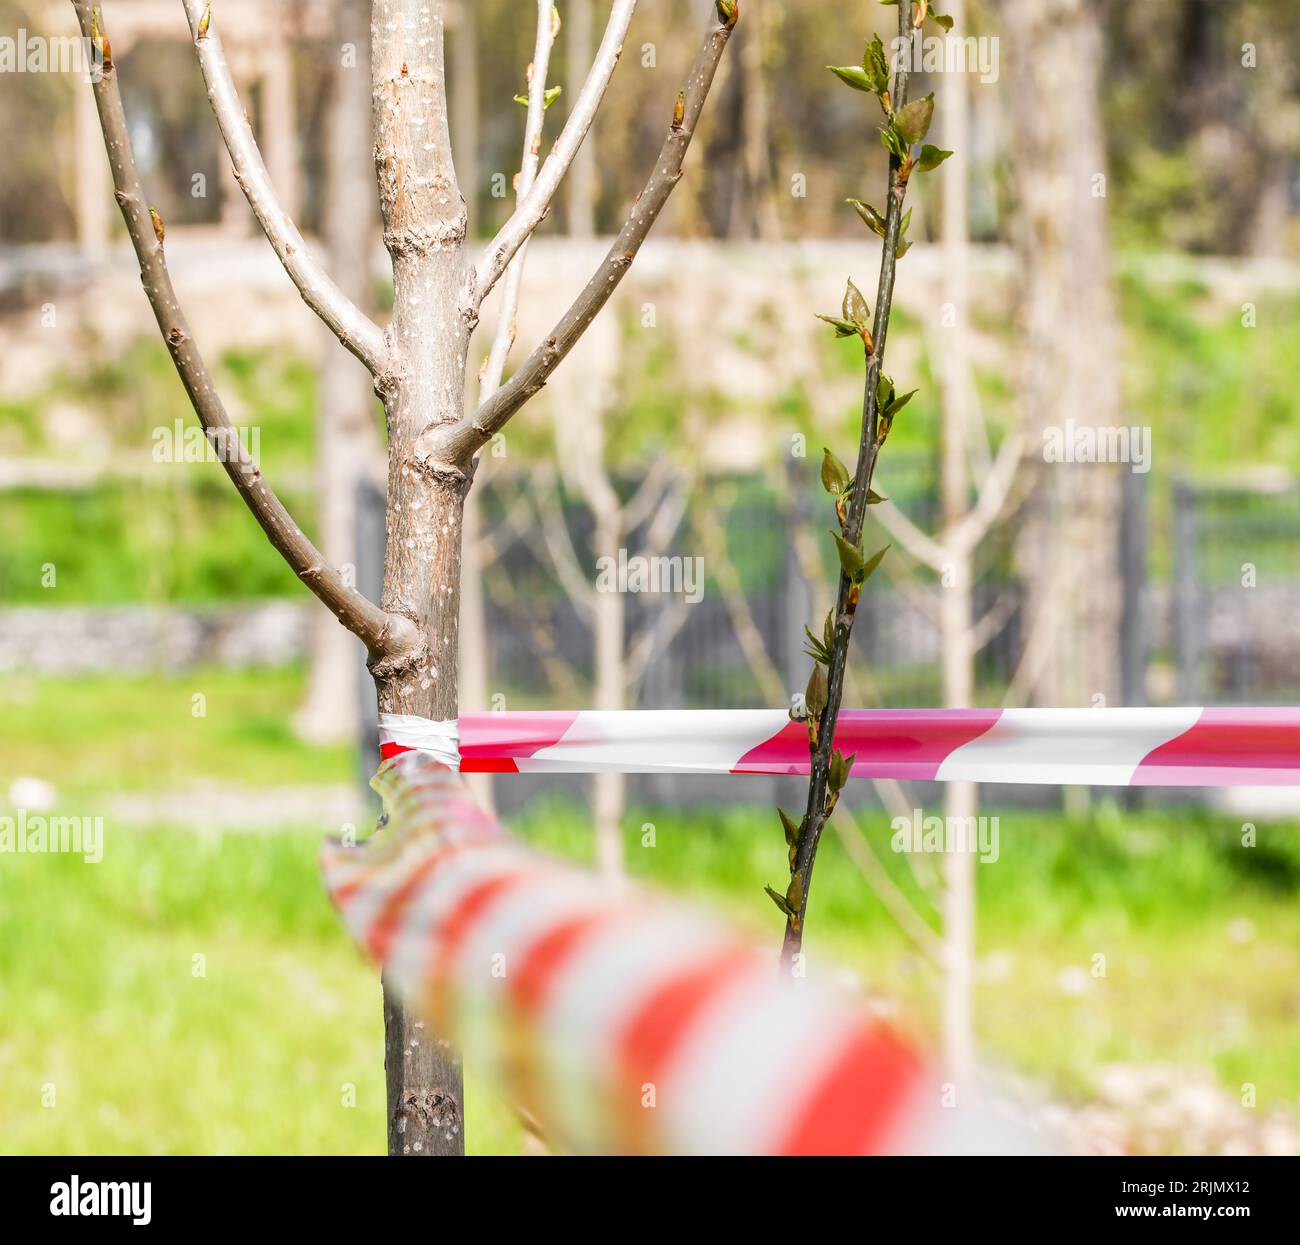 Ein junger Baum ist mit einem rot-weißen Signalband eingezäunt. Naturschutzkonzept. Selbstisolierung. Stockfoto